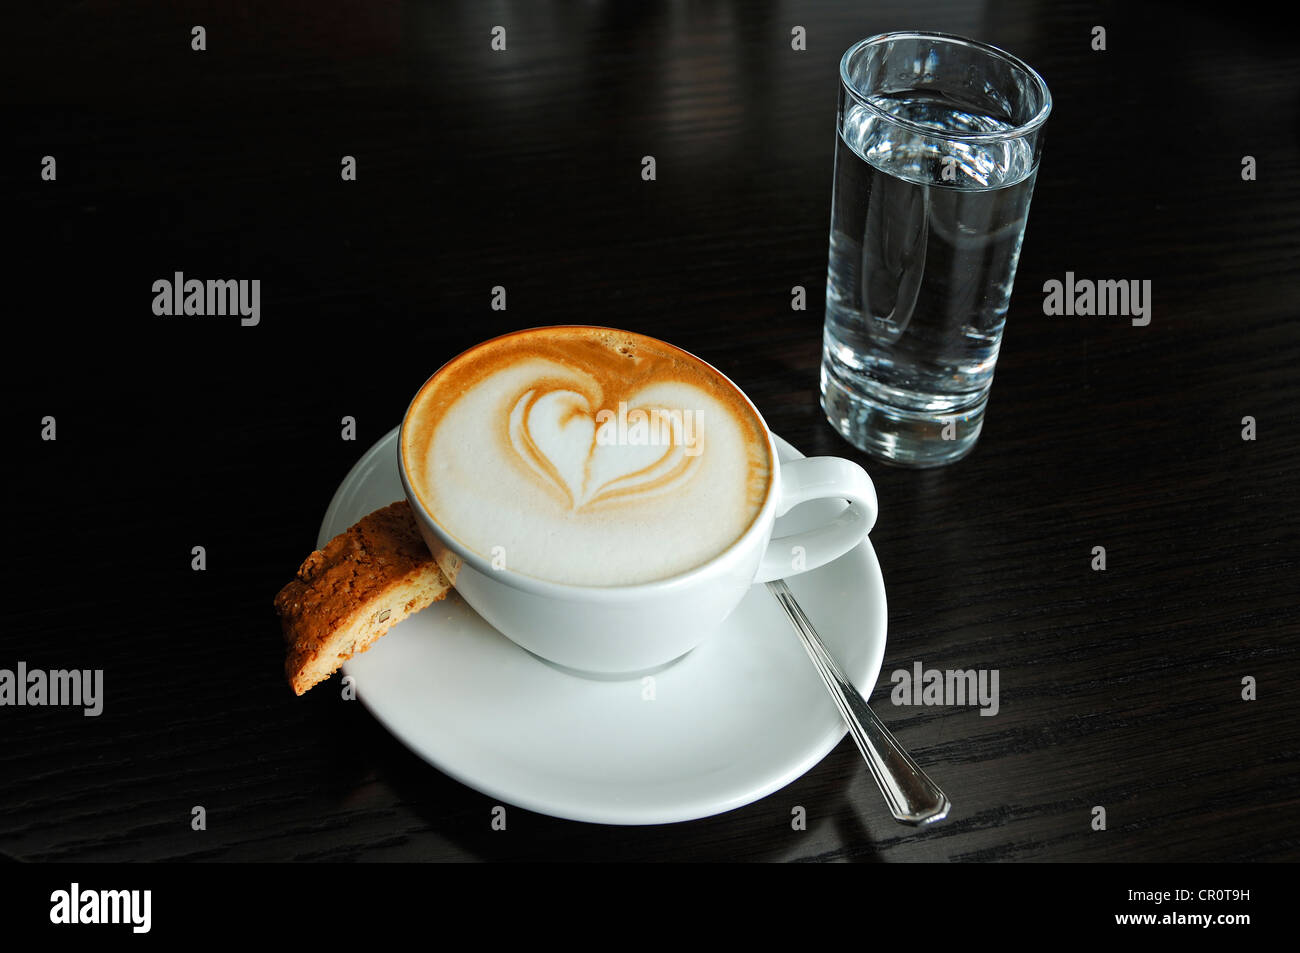 Tasse de cappuccino décoré d'un coeur, une biscotte et un verre d'eau sur un tableau noir Banque D'Images